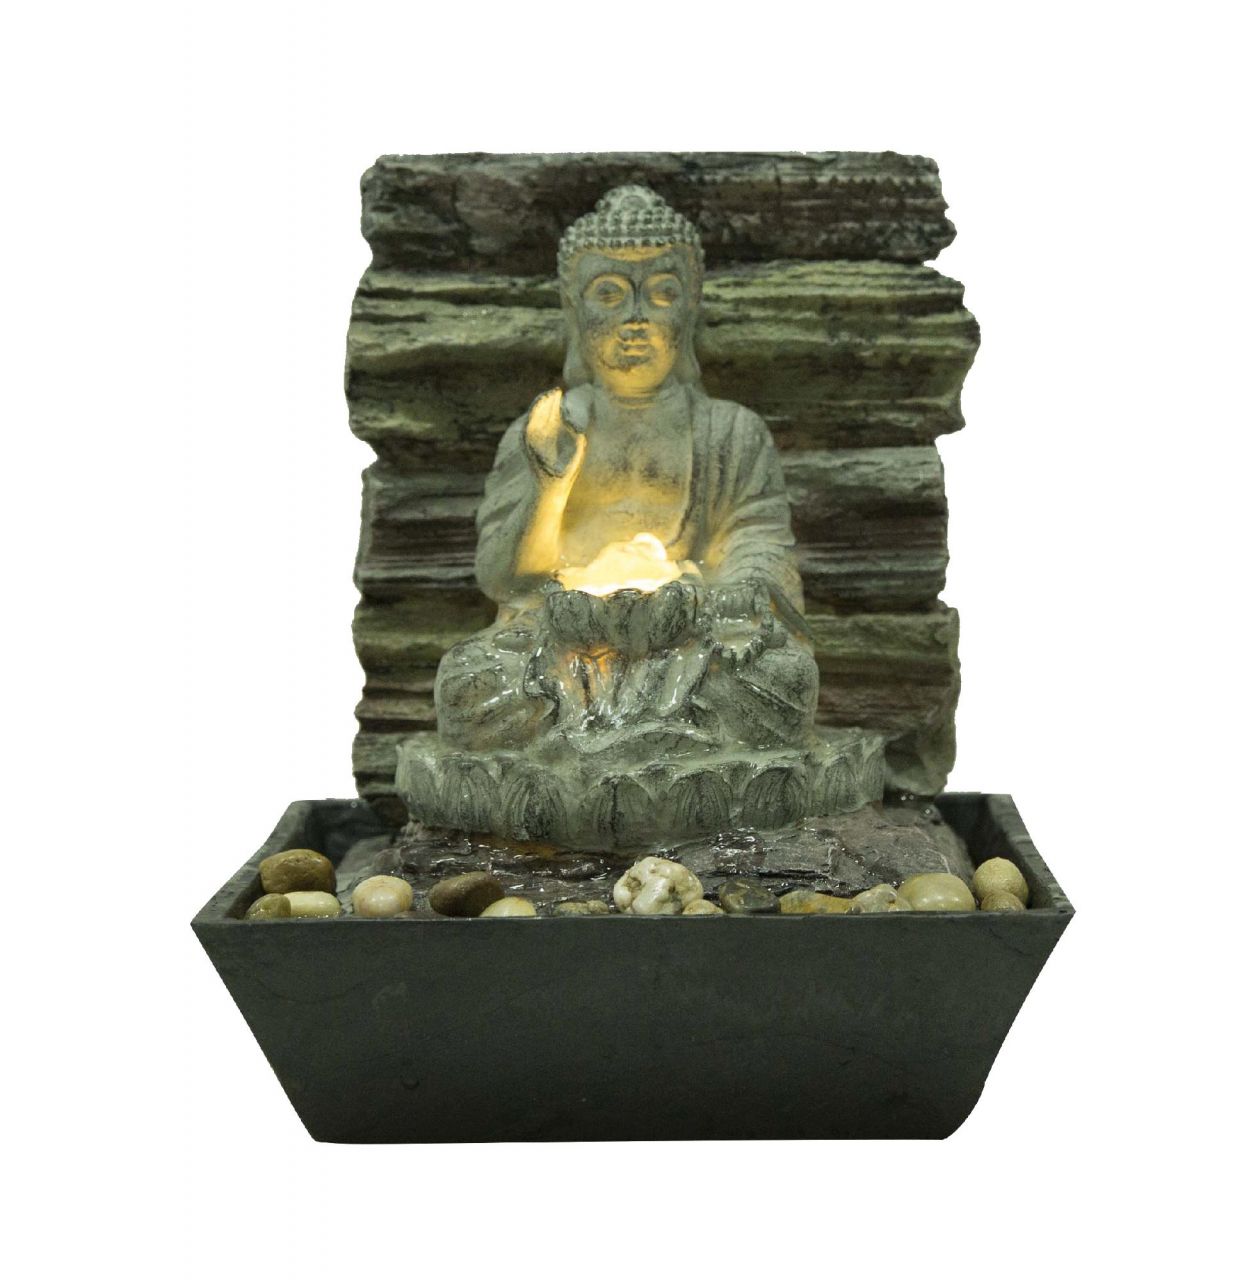 Silex Zimmerbrunnen Buddha 21,5x21,7x25,5cm